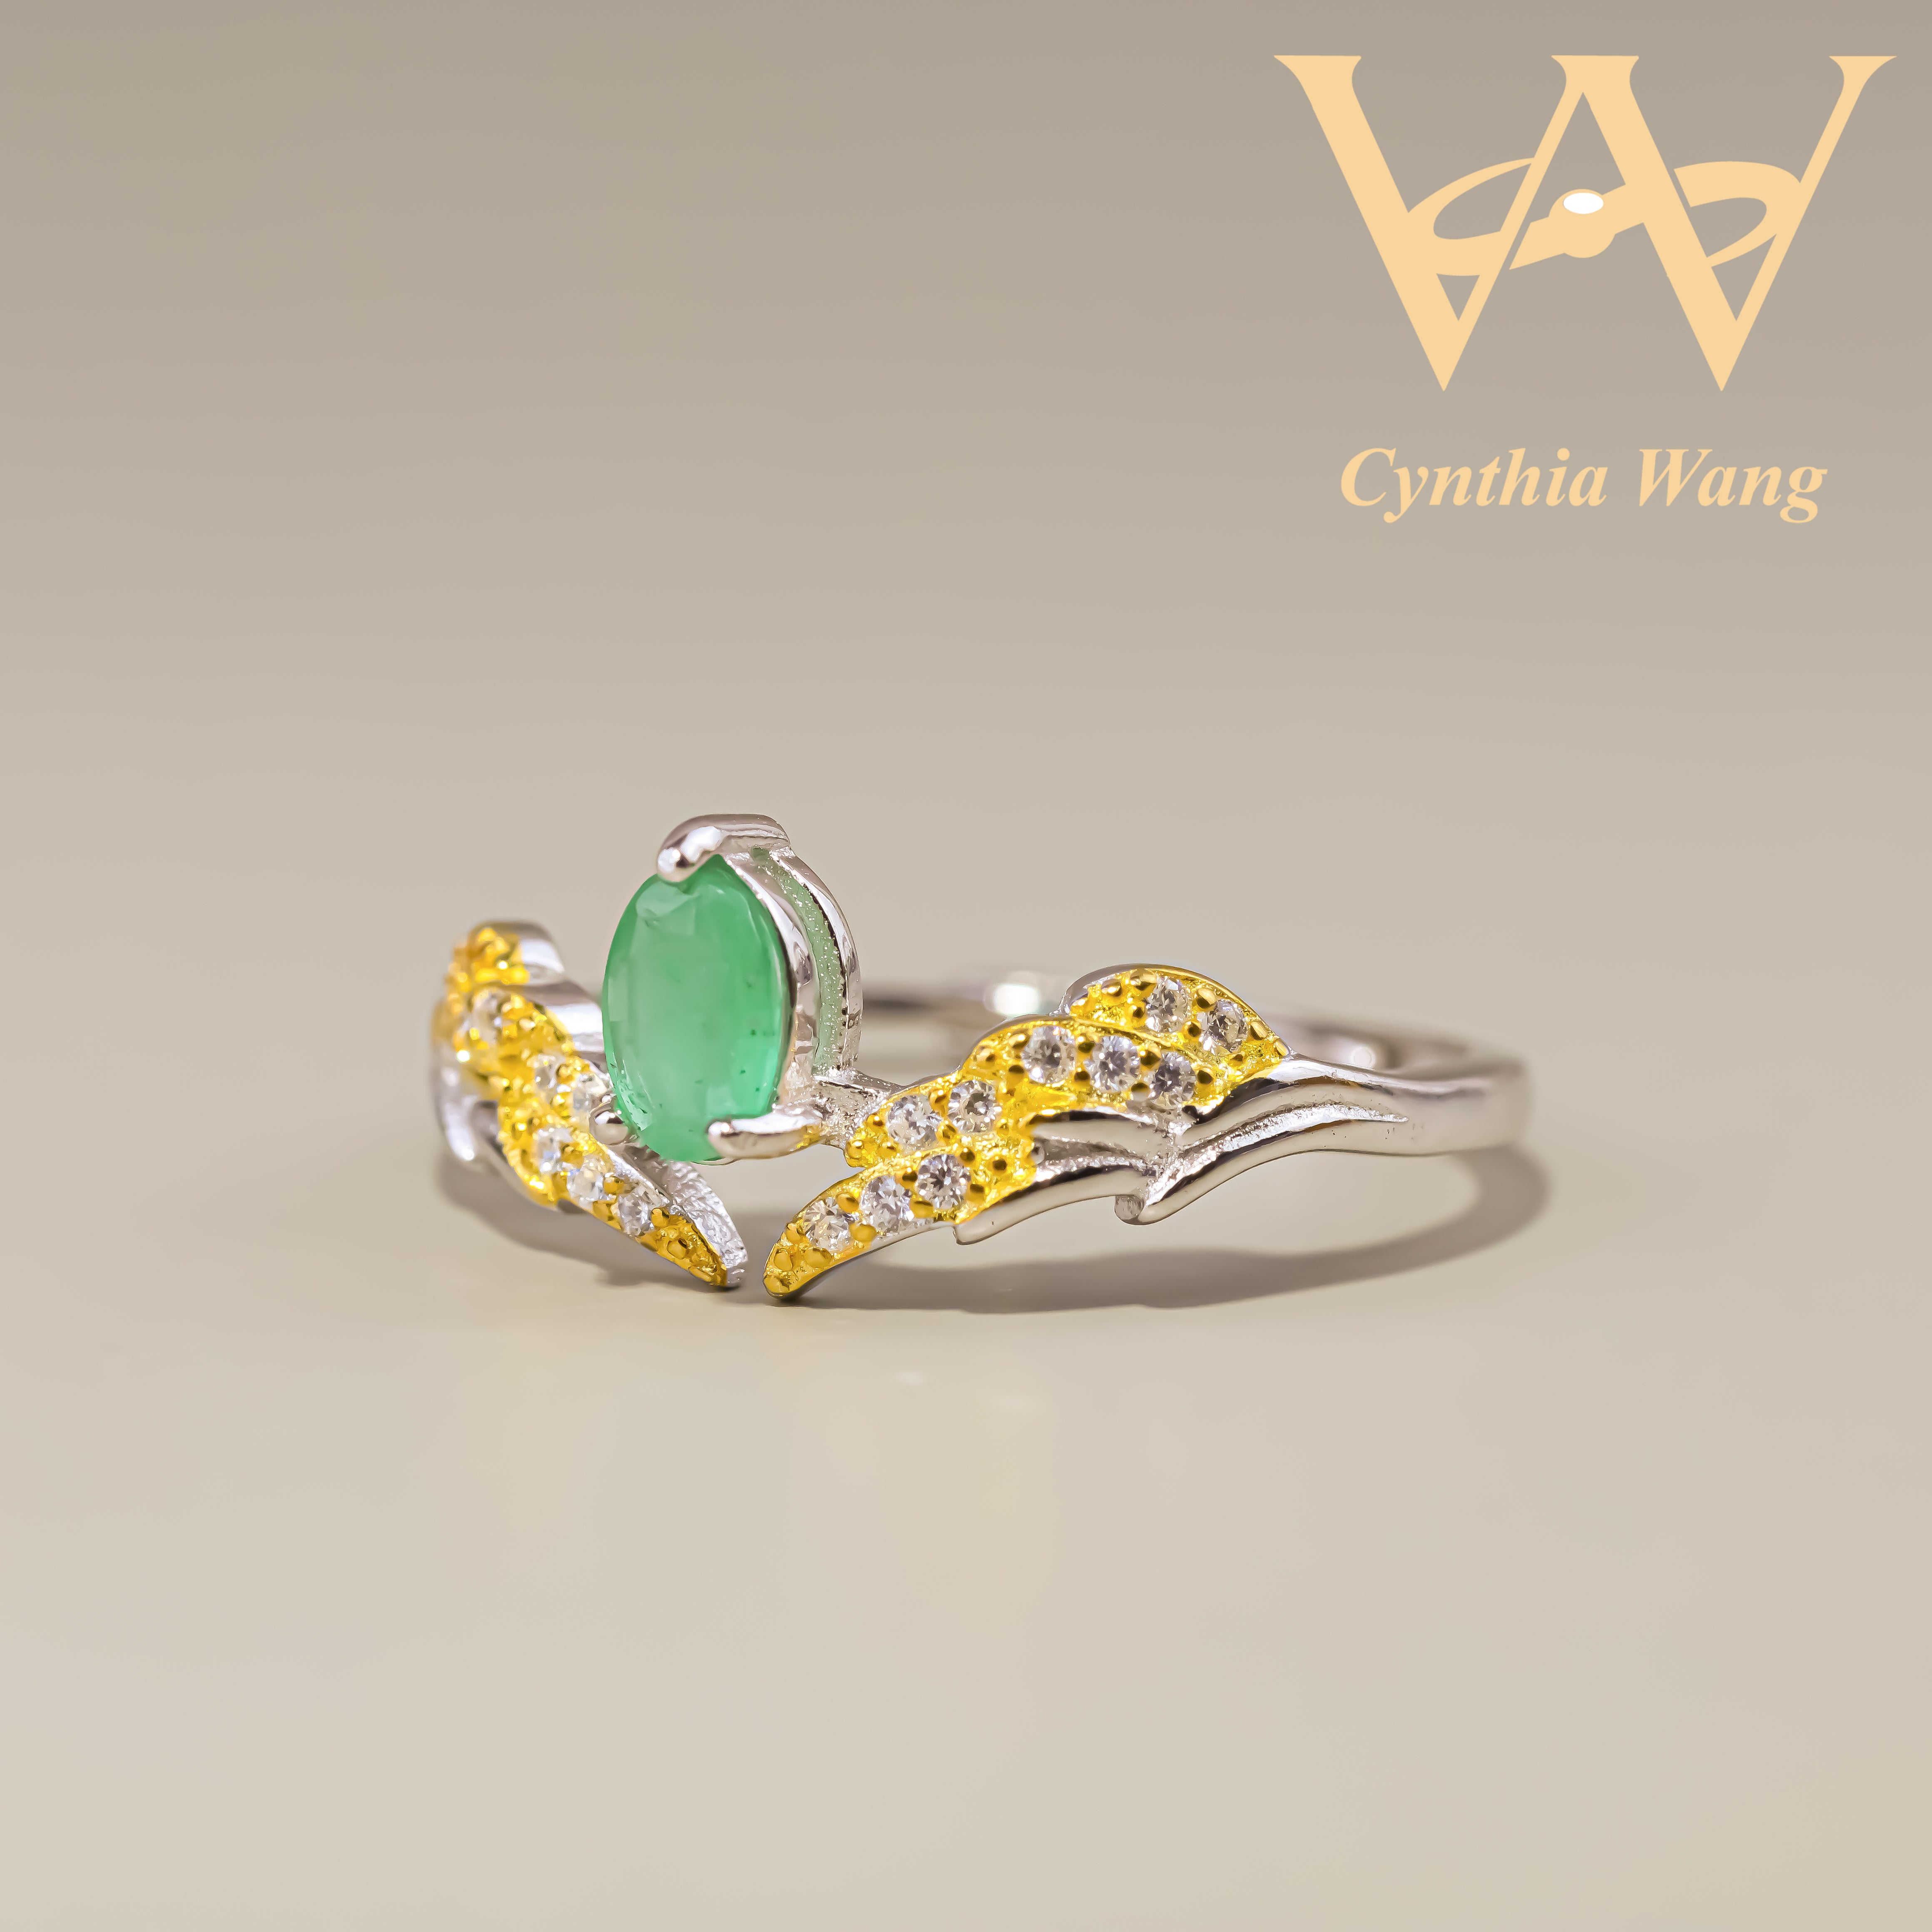 'Verdant Wings' Emerald Ring